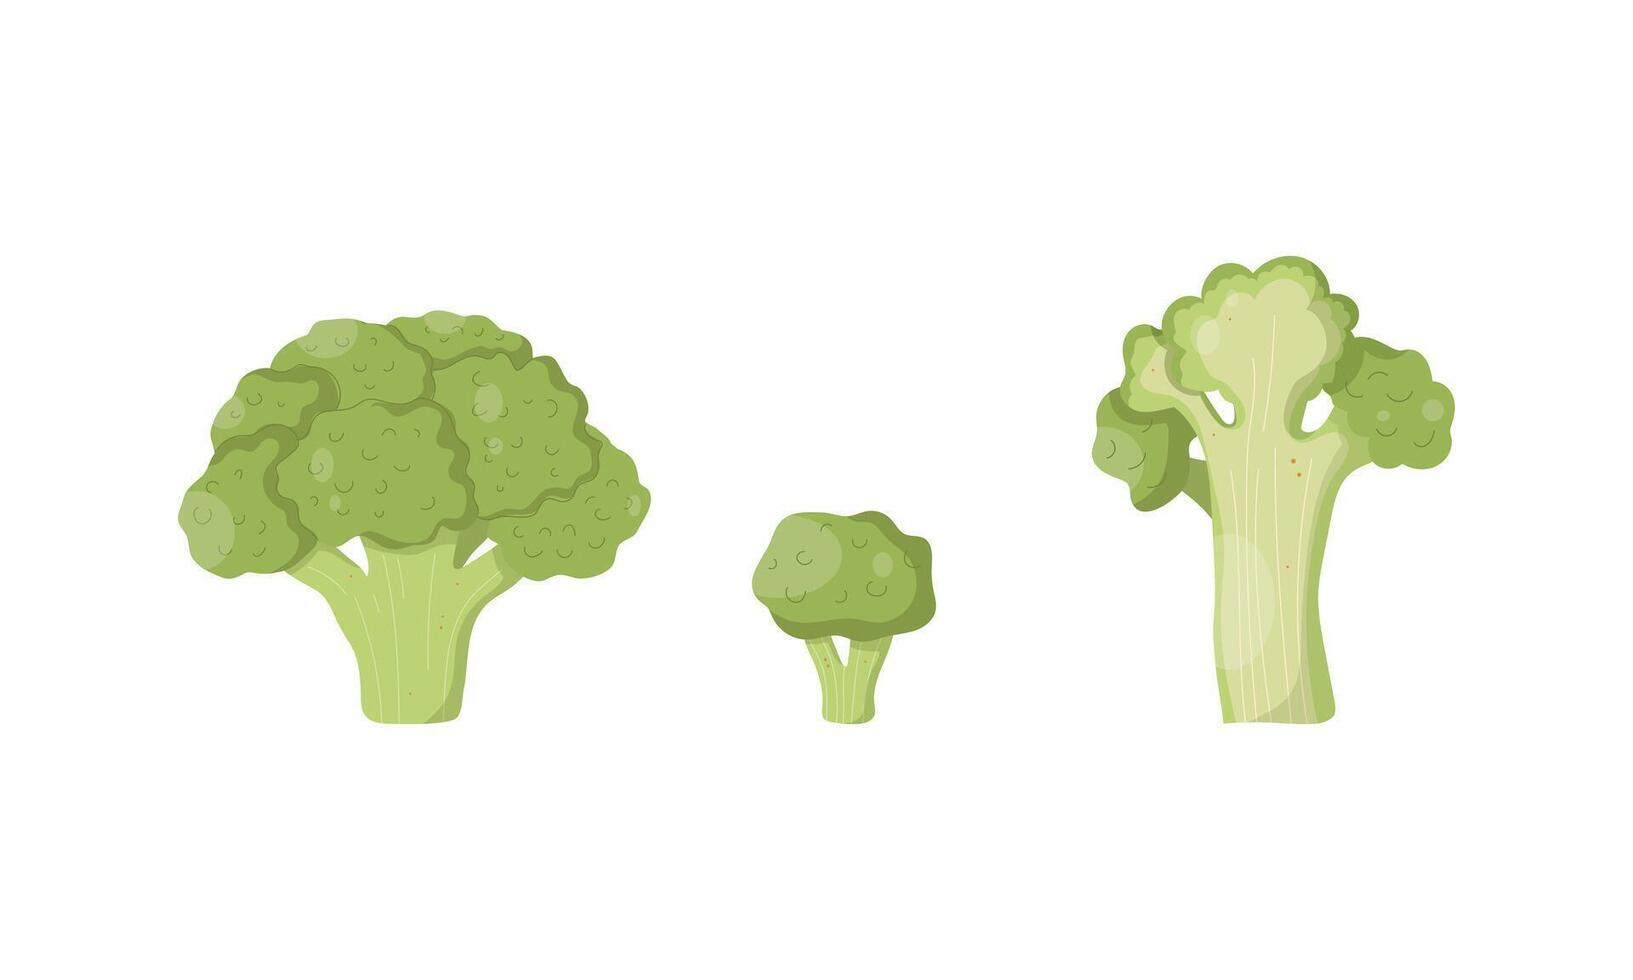 reeks met broccoli. hand- getrokken broccoli van verschillend hoeken vector